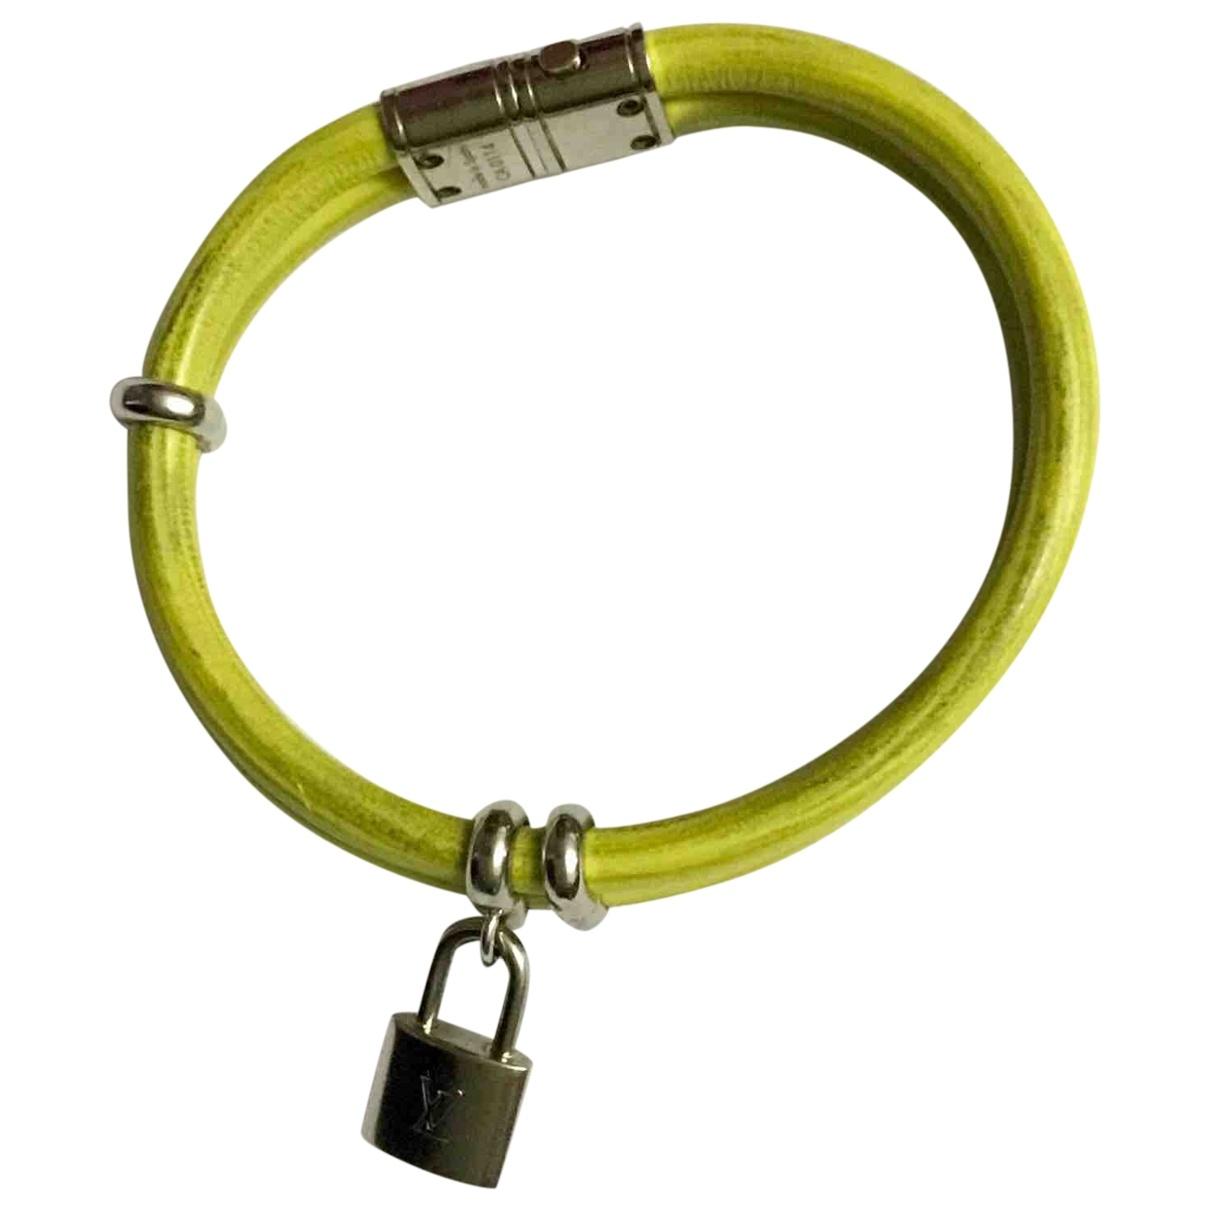 Lyst - Louis Vuitton Lockit Leather Bracelet in Green